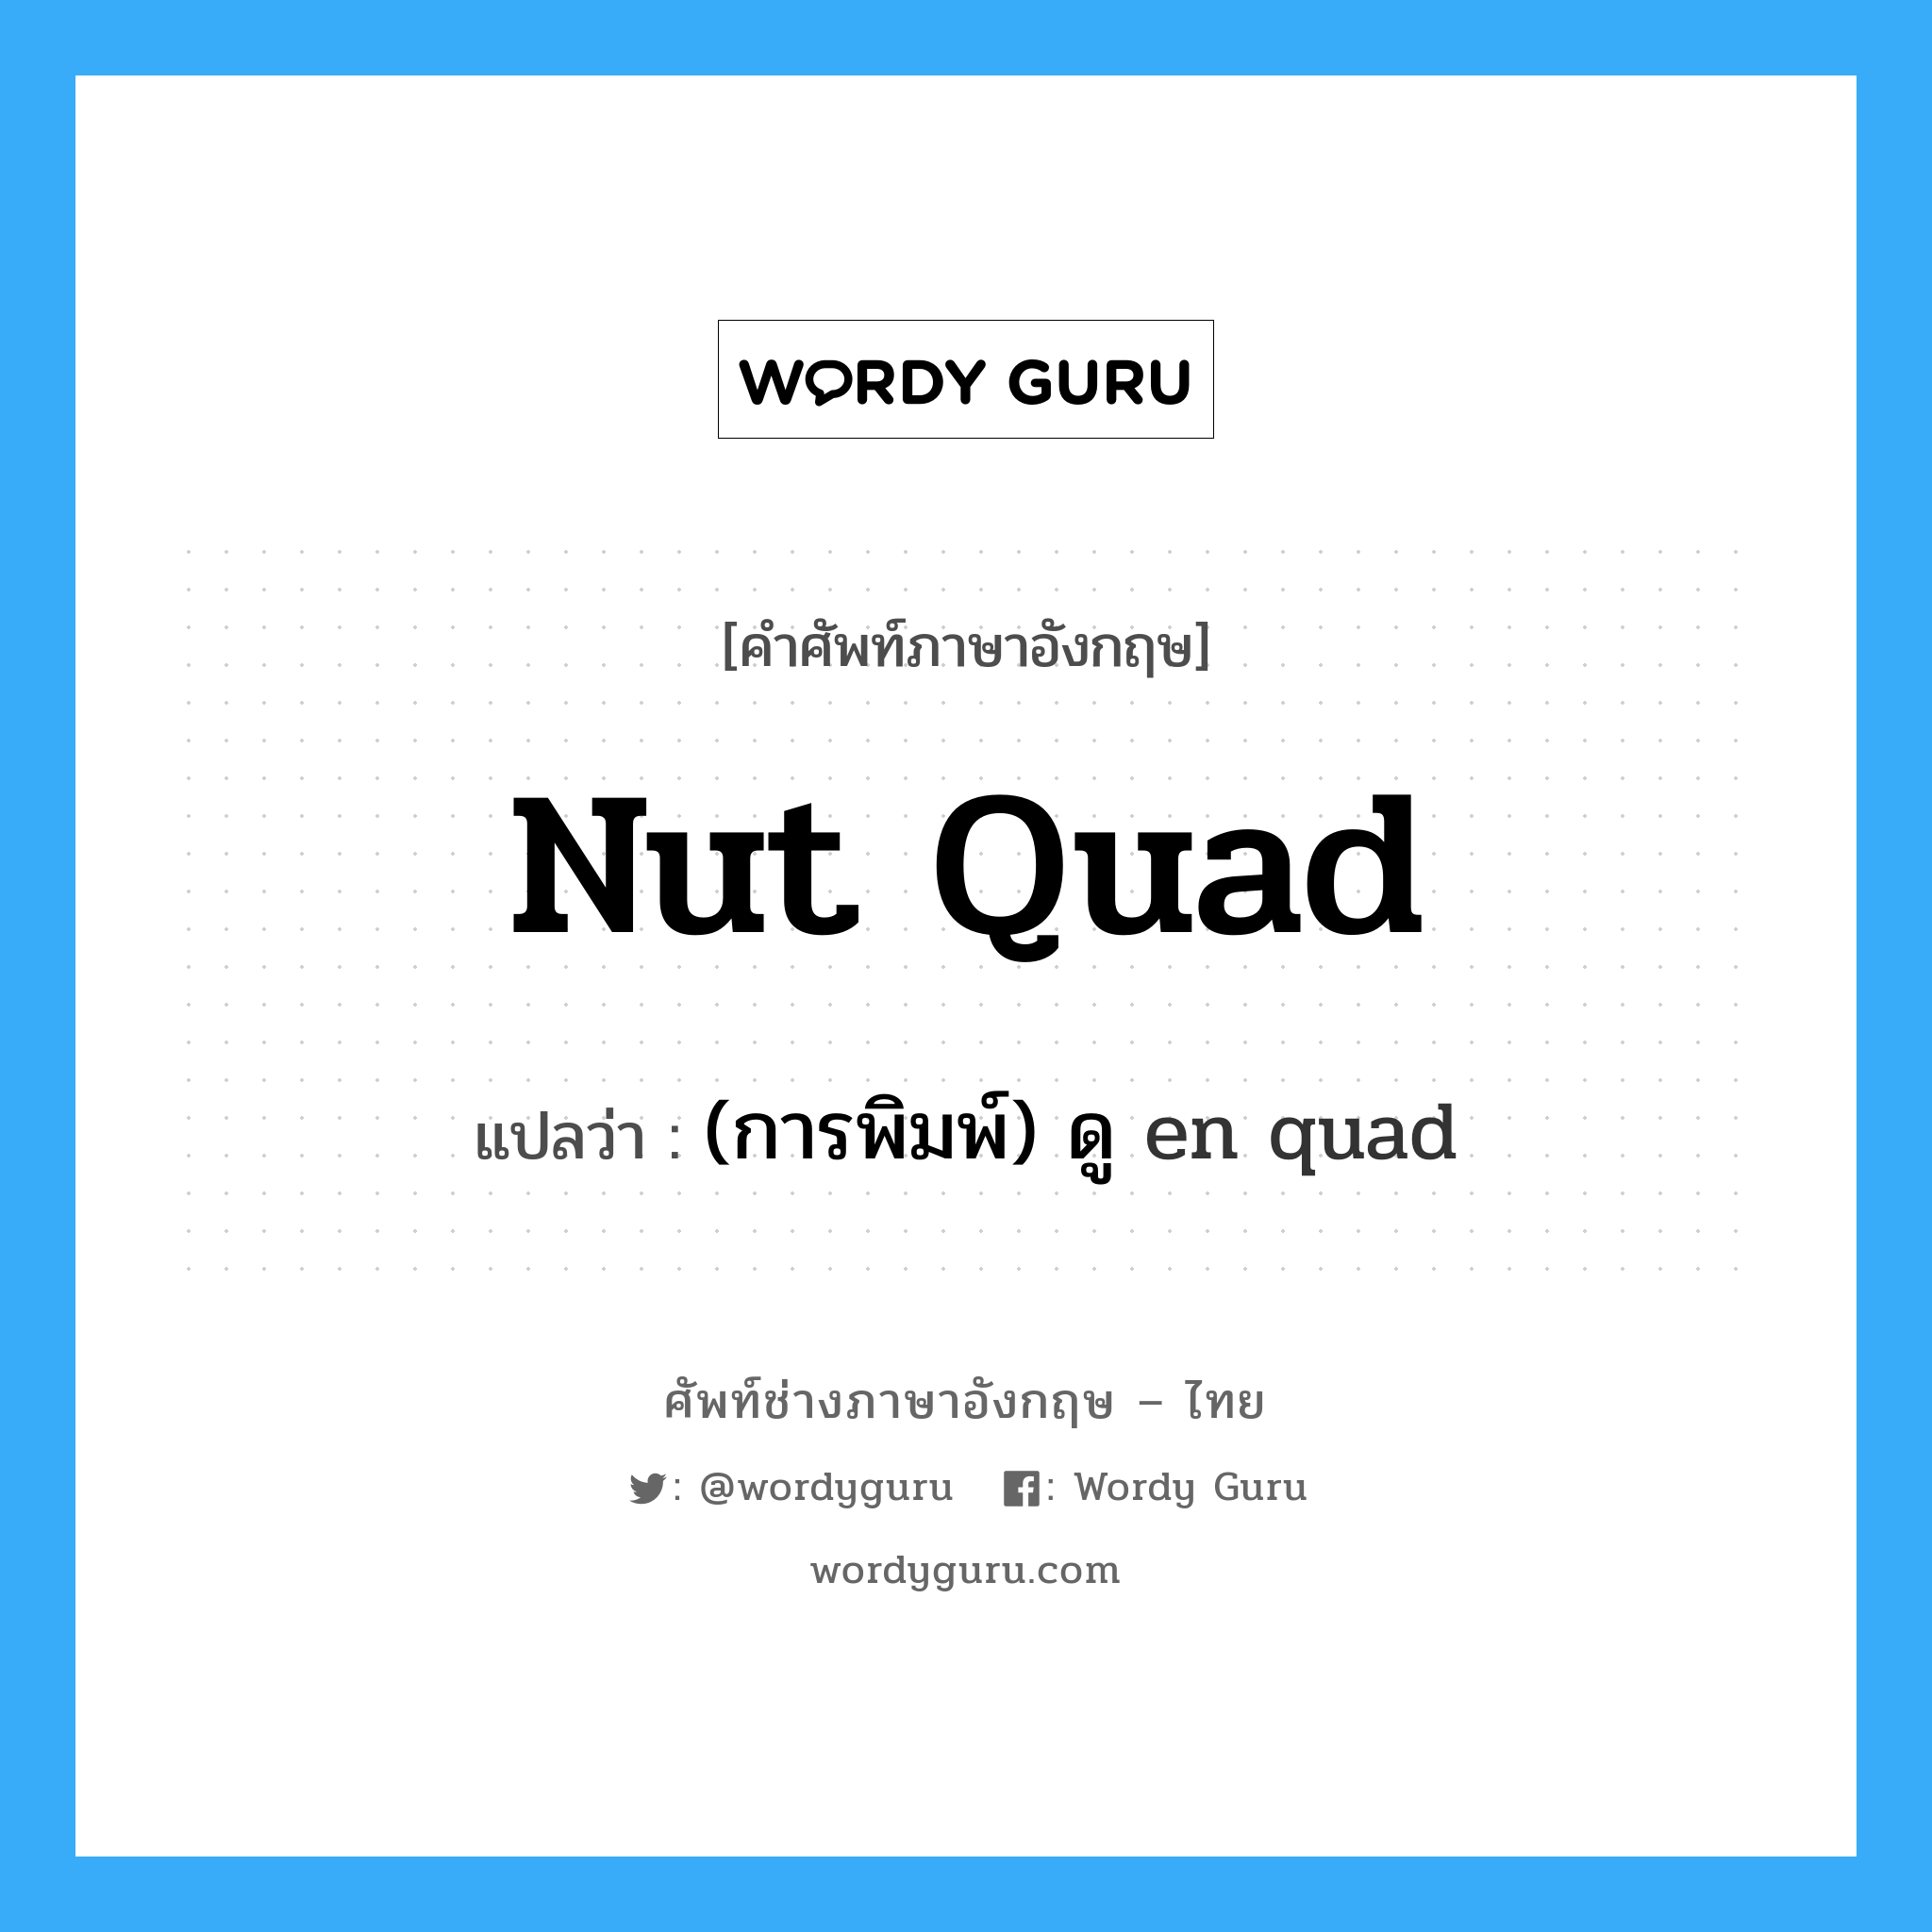 (การพิมพ์) ดู en quad ภาษาอังกฤษ?, คำศัพท์ช่างภาษาอังกฤษ - ไทย (การพิมพ์) ดู en quad คำศัพท์ภาษาอังกฤษ (การพิมพ์) ดู en quad แปลว่า nut quad